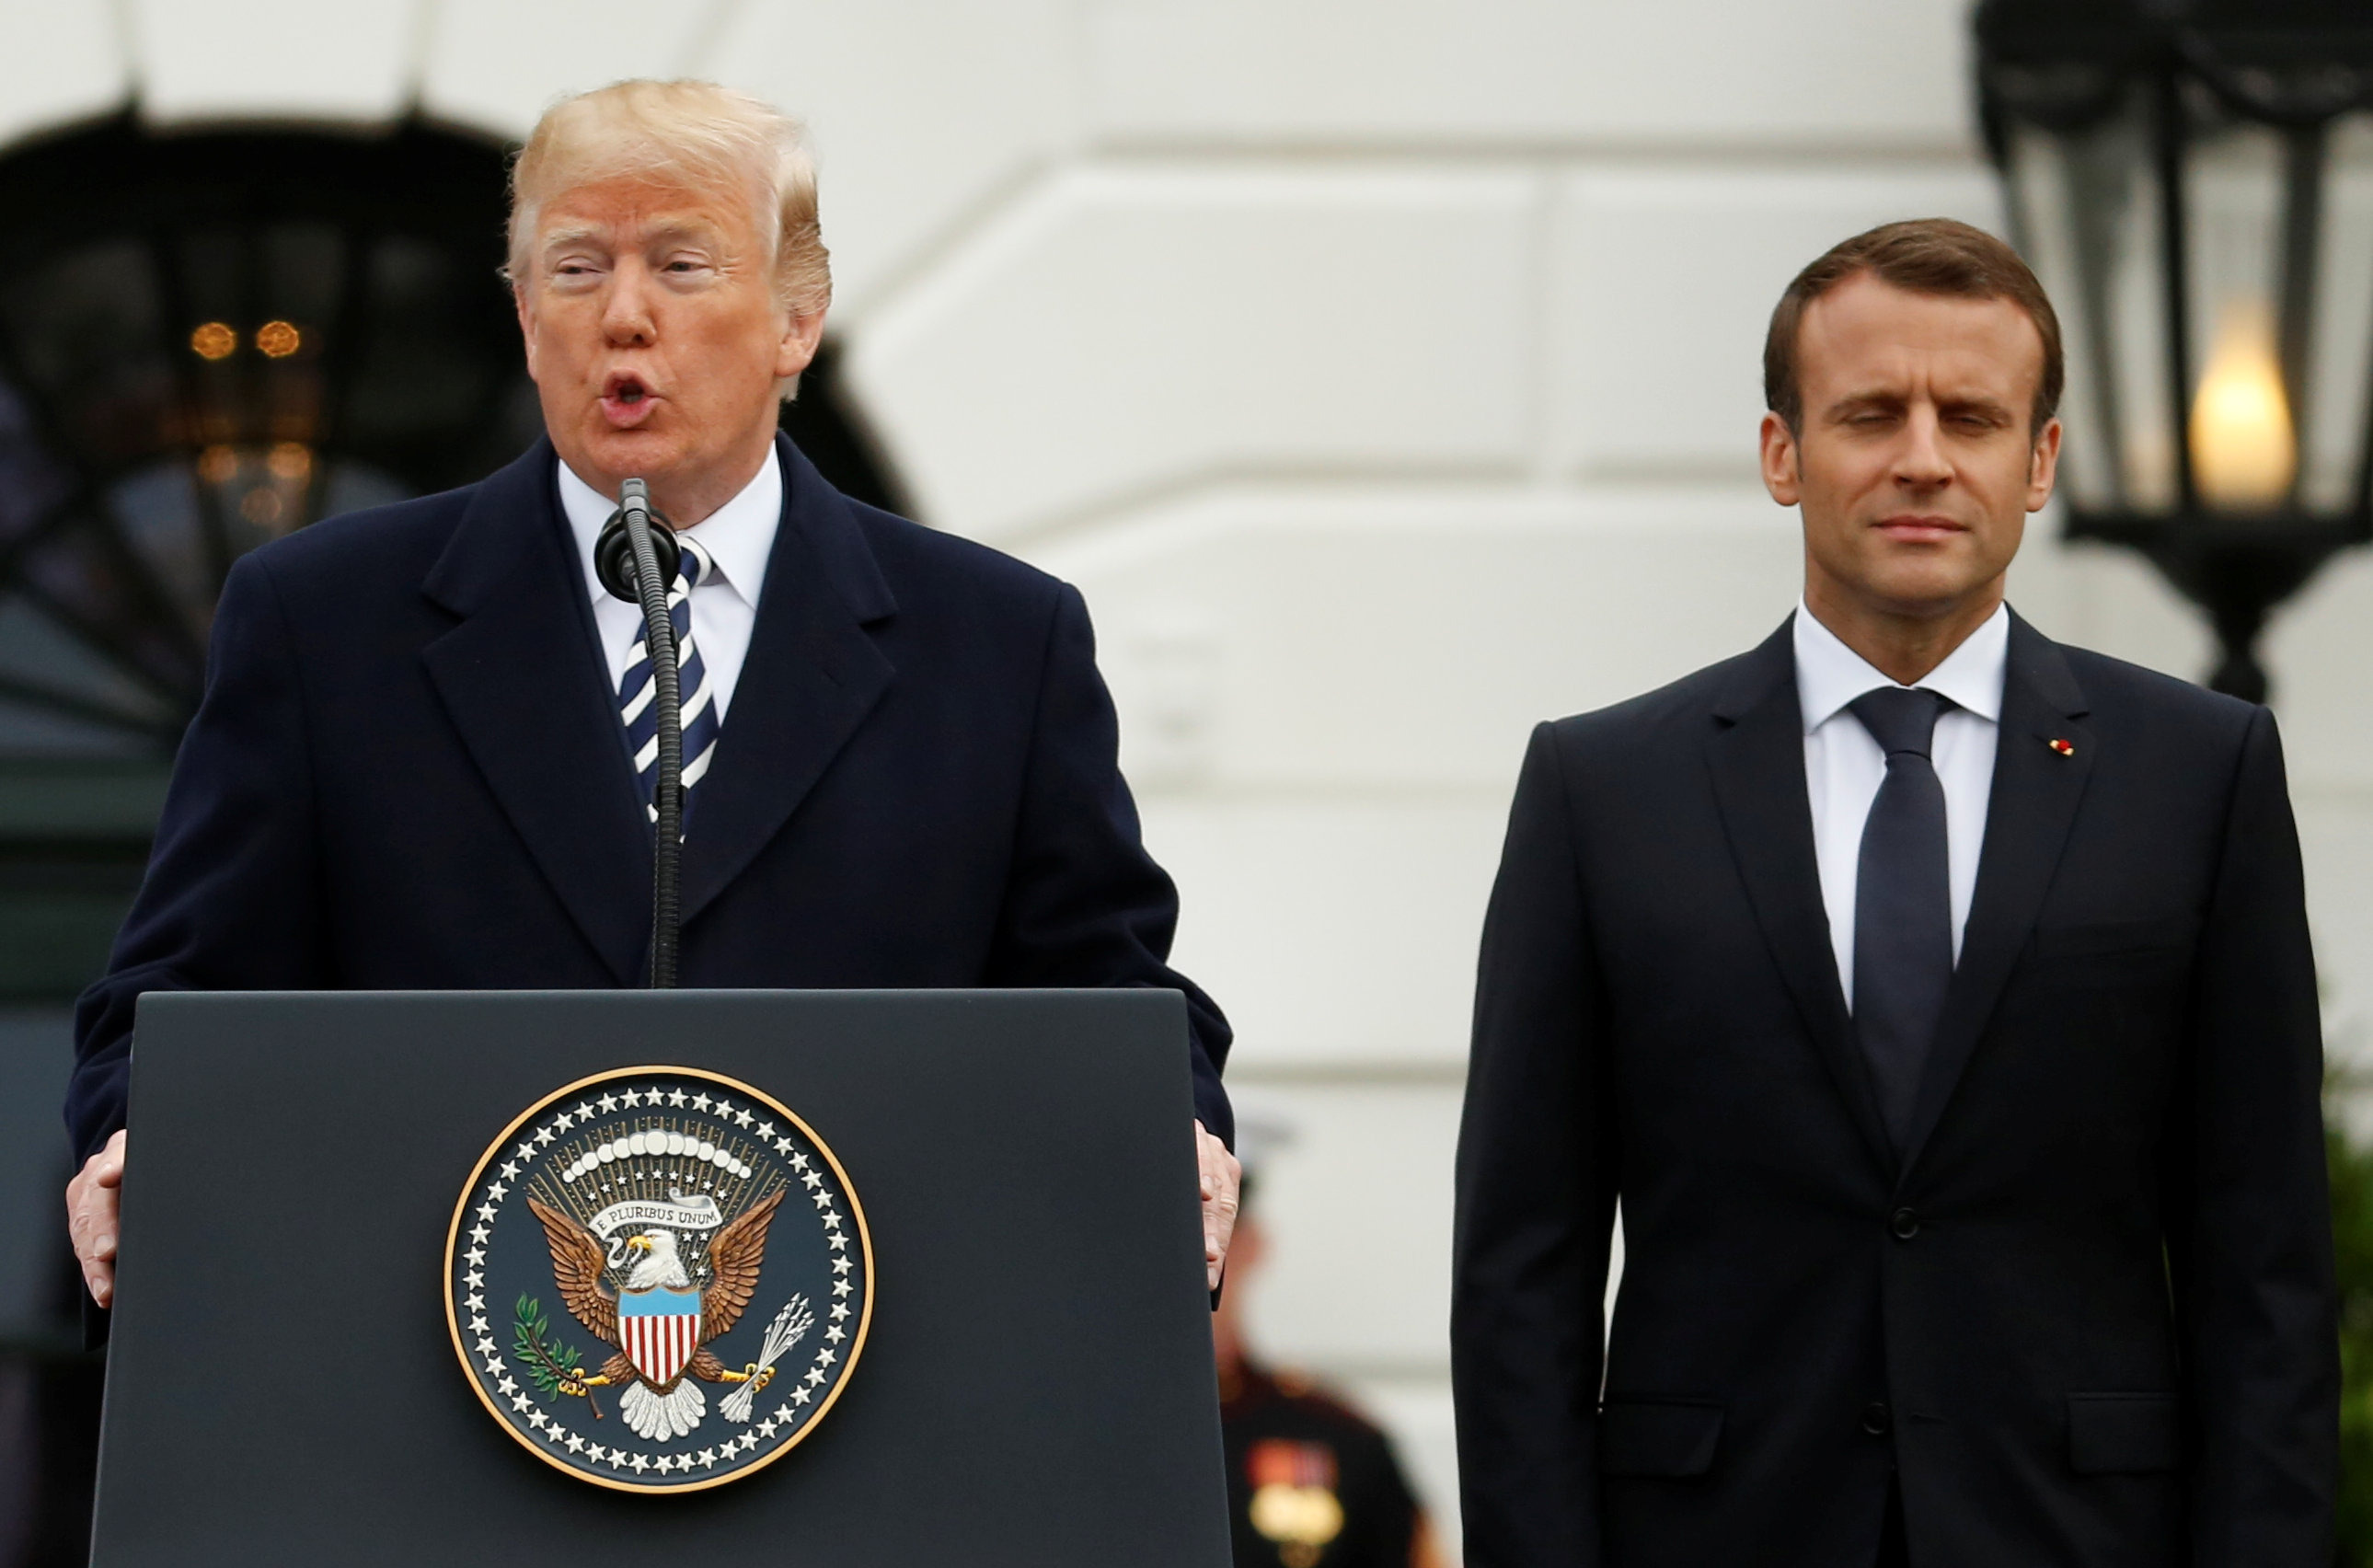 El presidente francés intenta convencer a Trump de mantenerse dentro del acuerdo nuclear firmado con Irán en 2015.